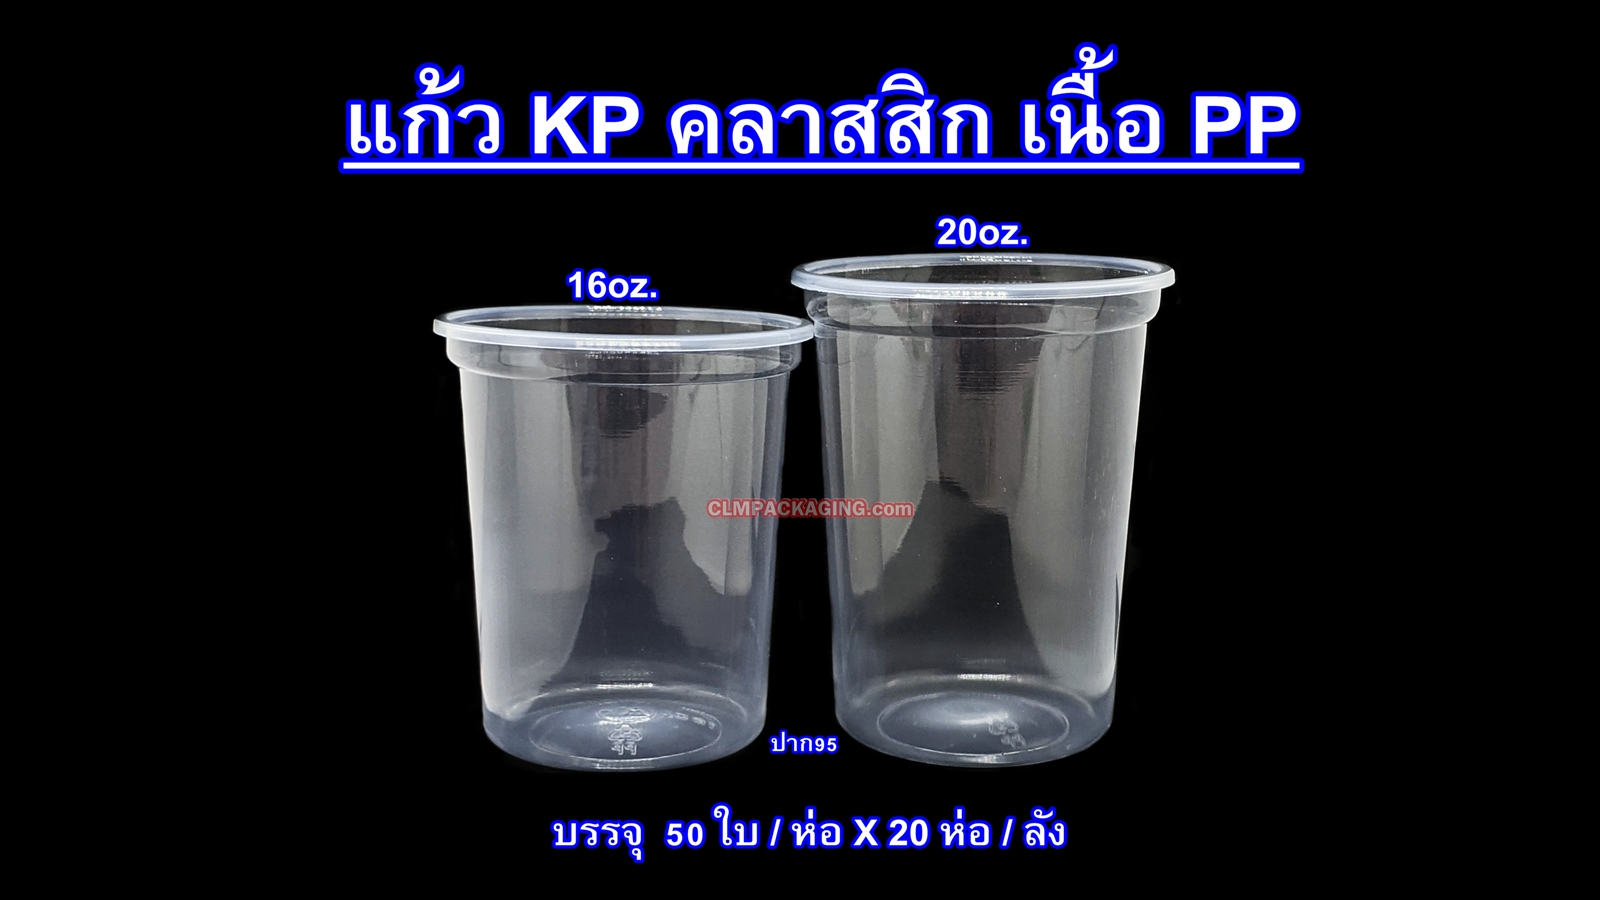 แก้ว Kingpack  เนื้อ PP 20 oz. .ใส เรียบ ปาก 95 mm.